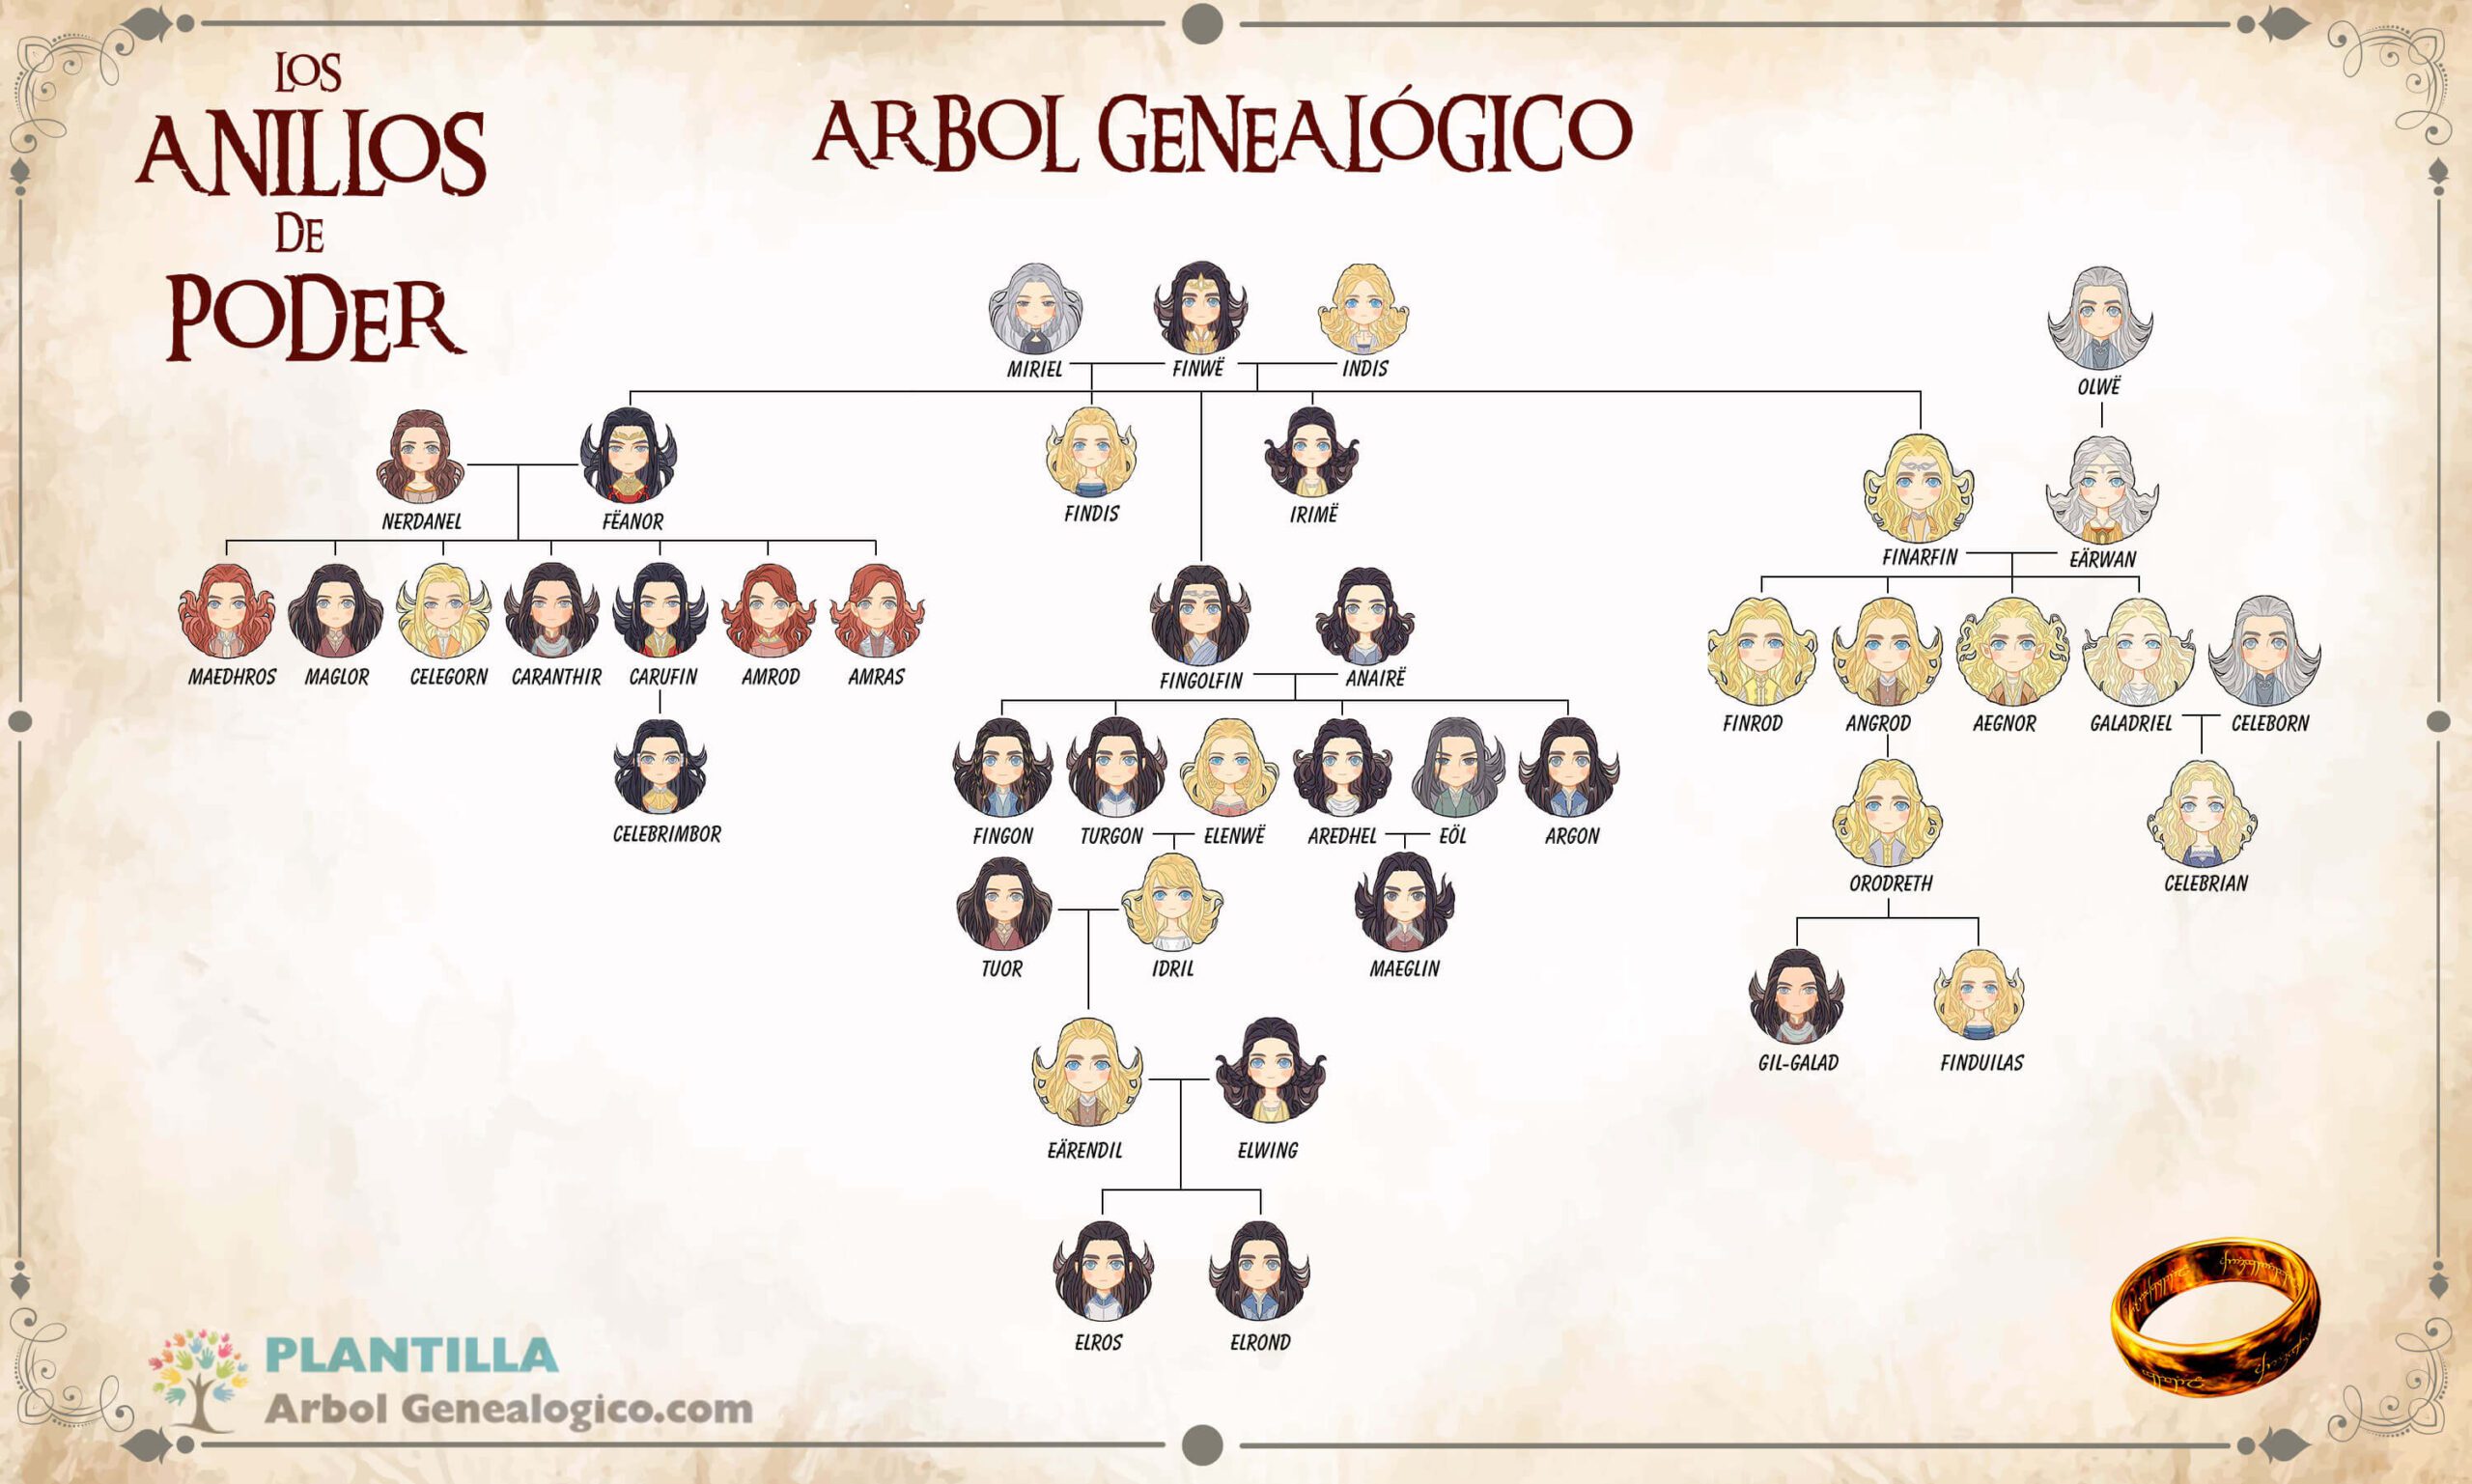 arbol genealogico los anillos de poder